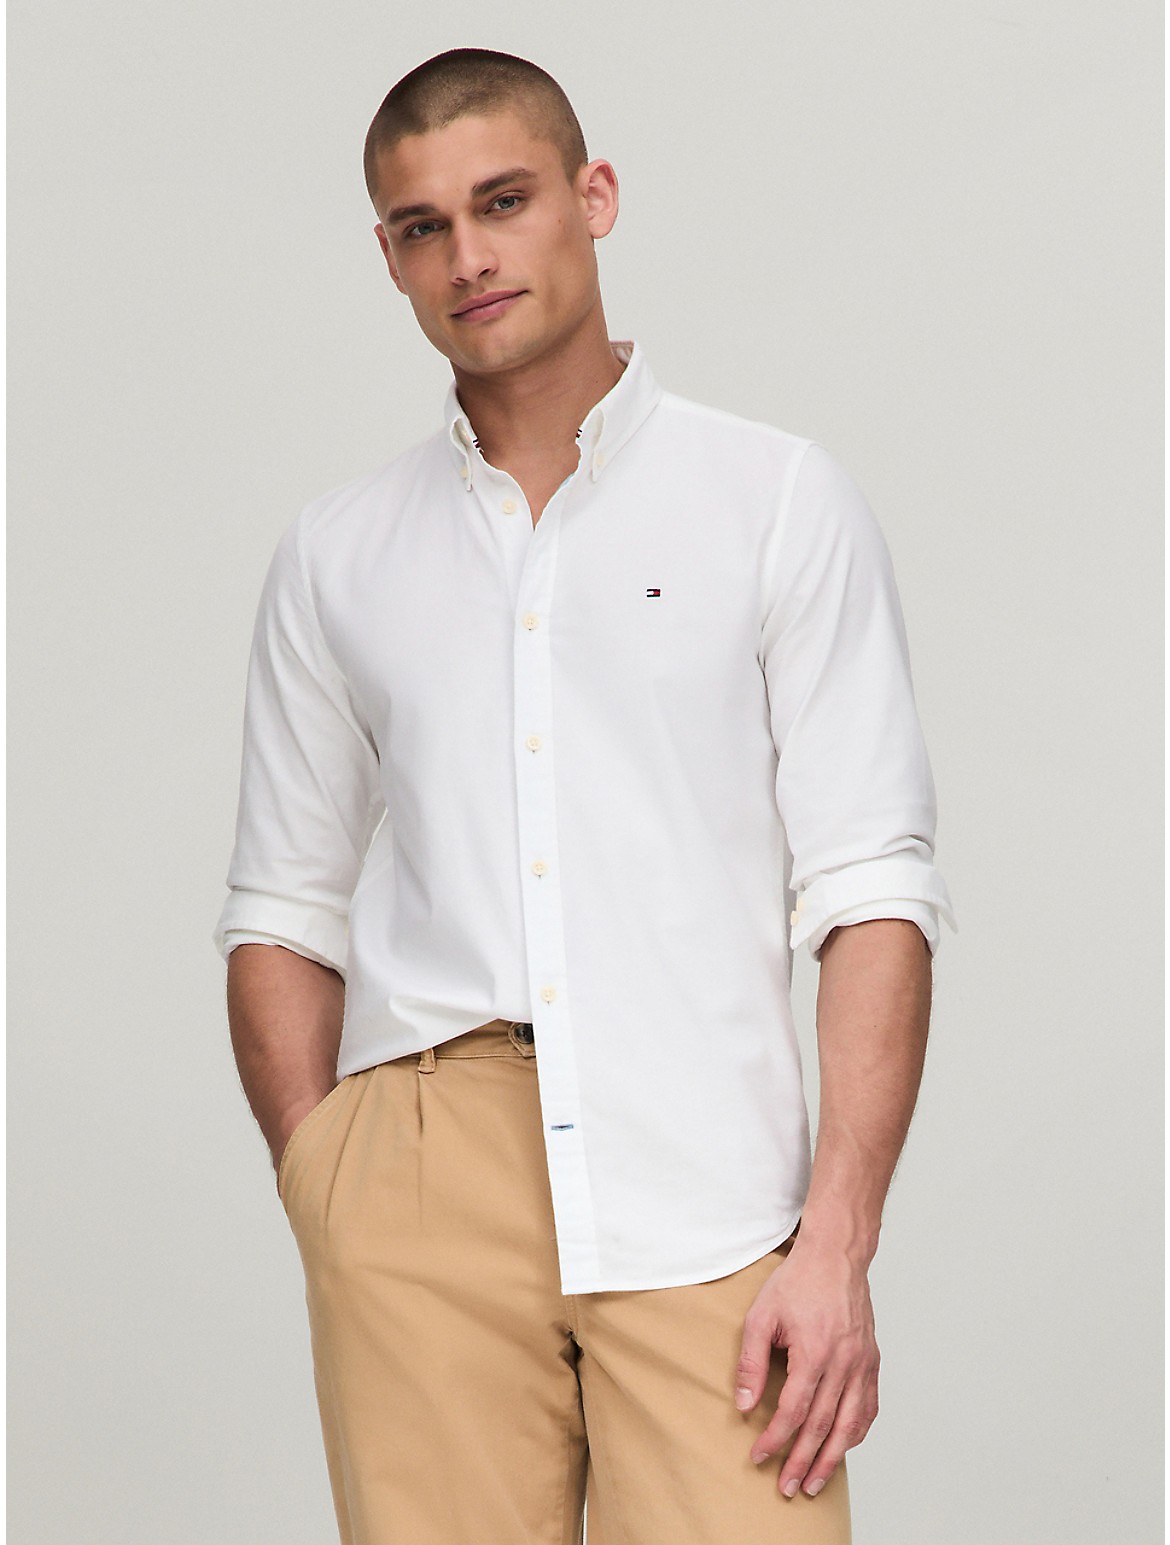 Tommy Hilfiger Men's Slim Fit Oxford Shirt